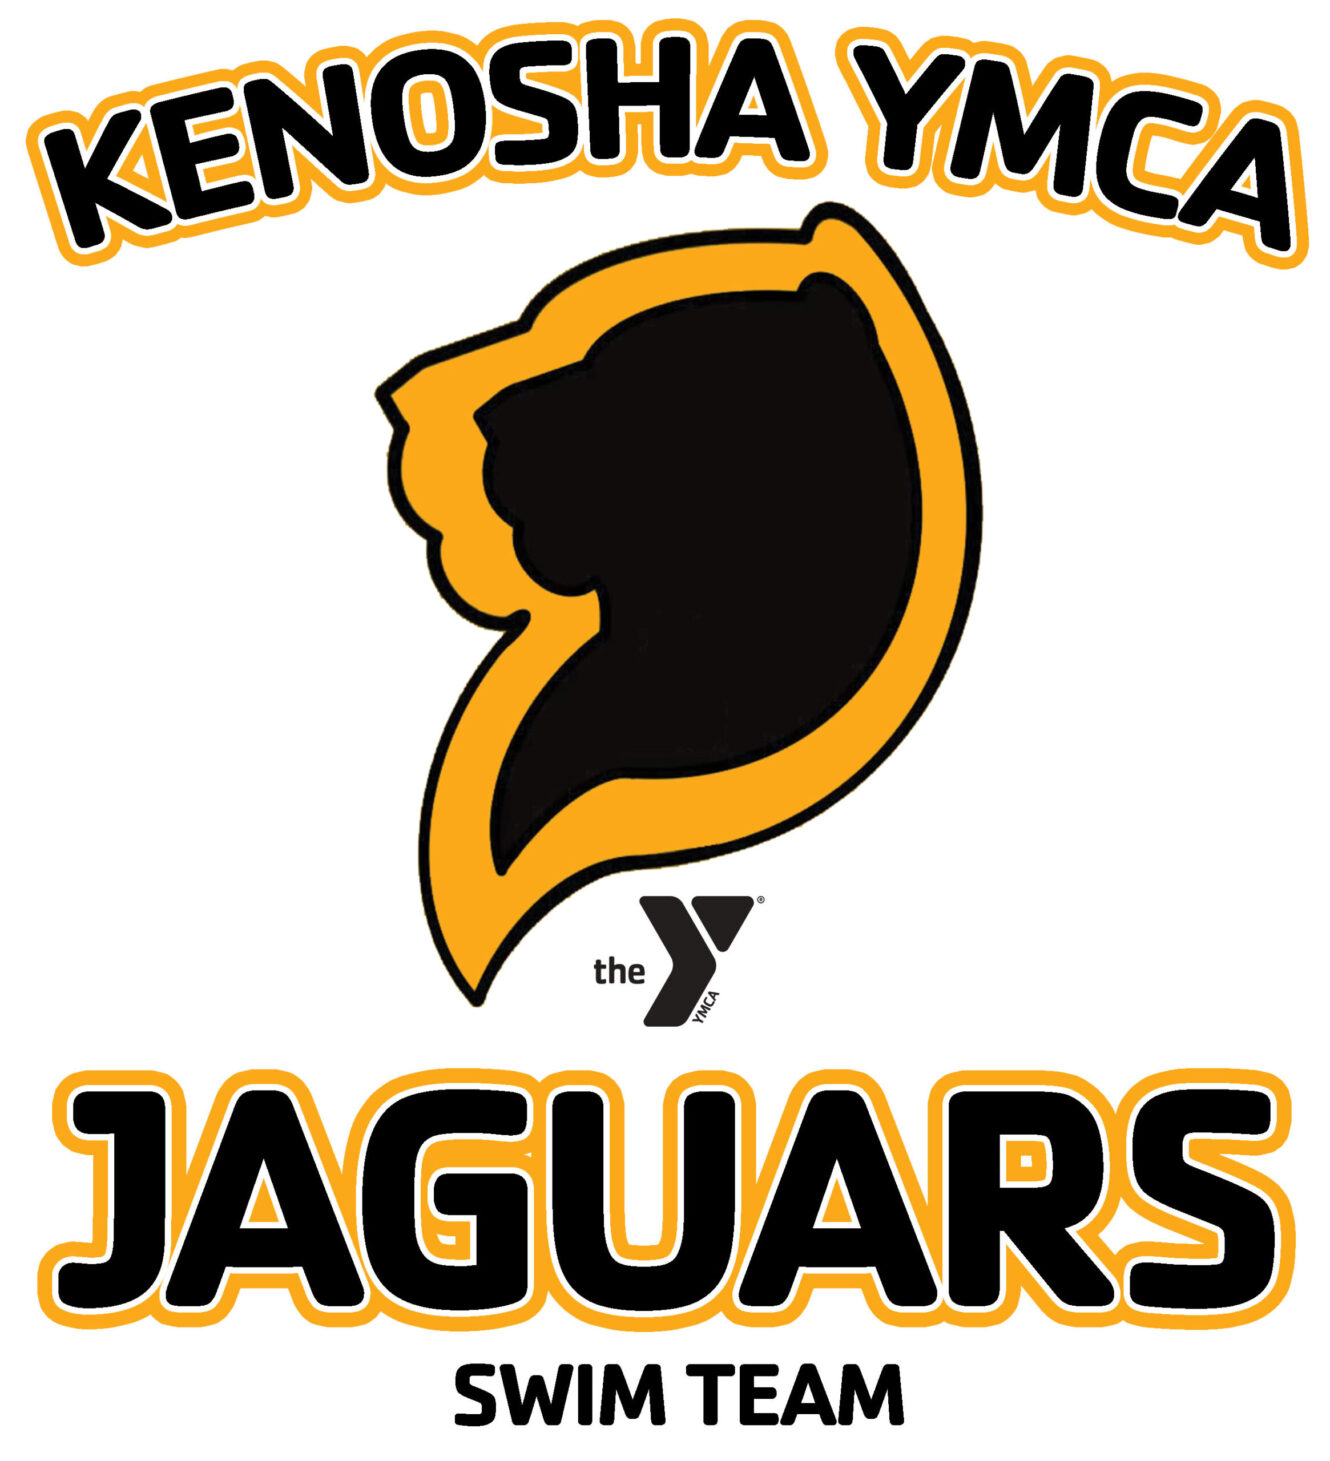 Kenosha YMCA Jaguars Swim Team Logo